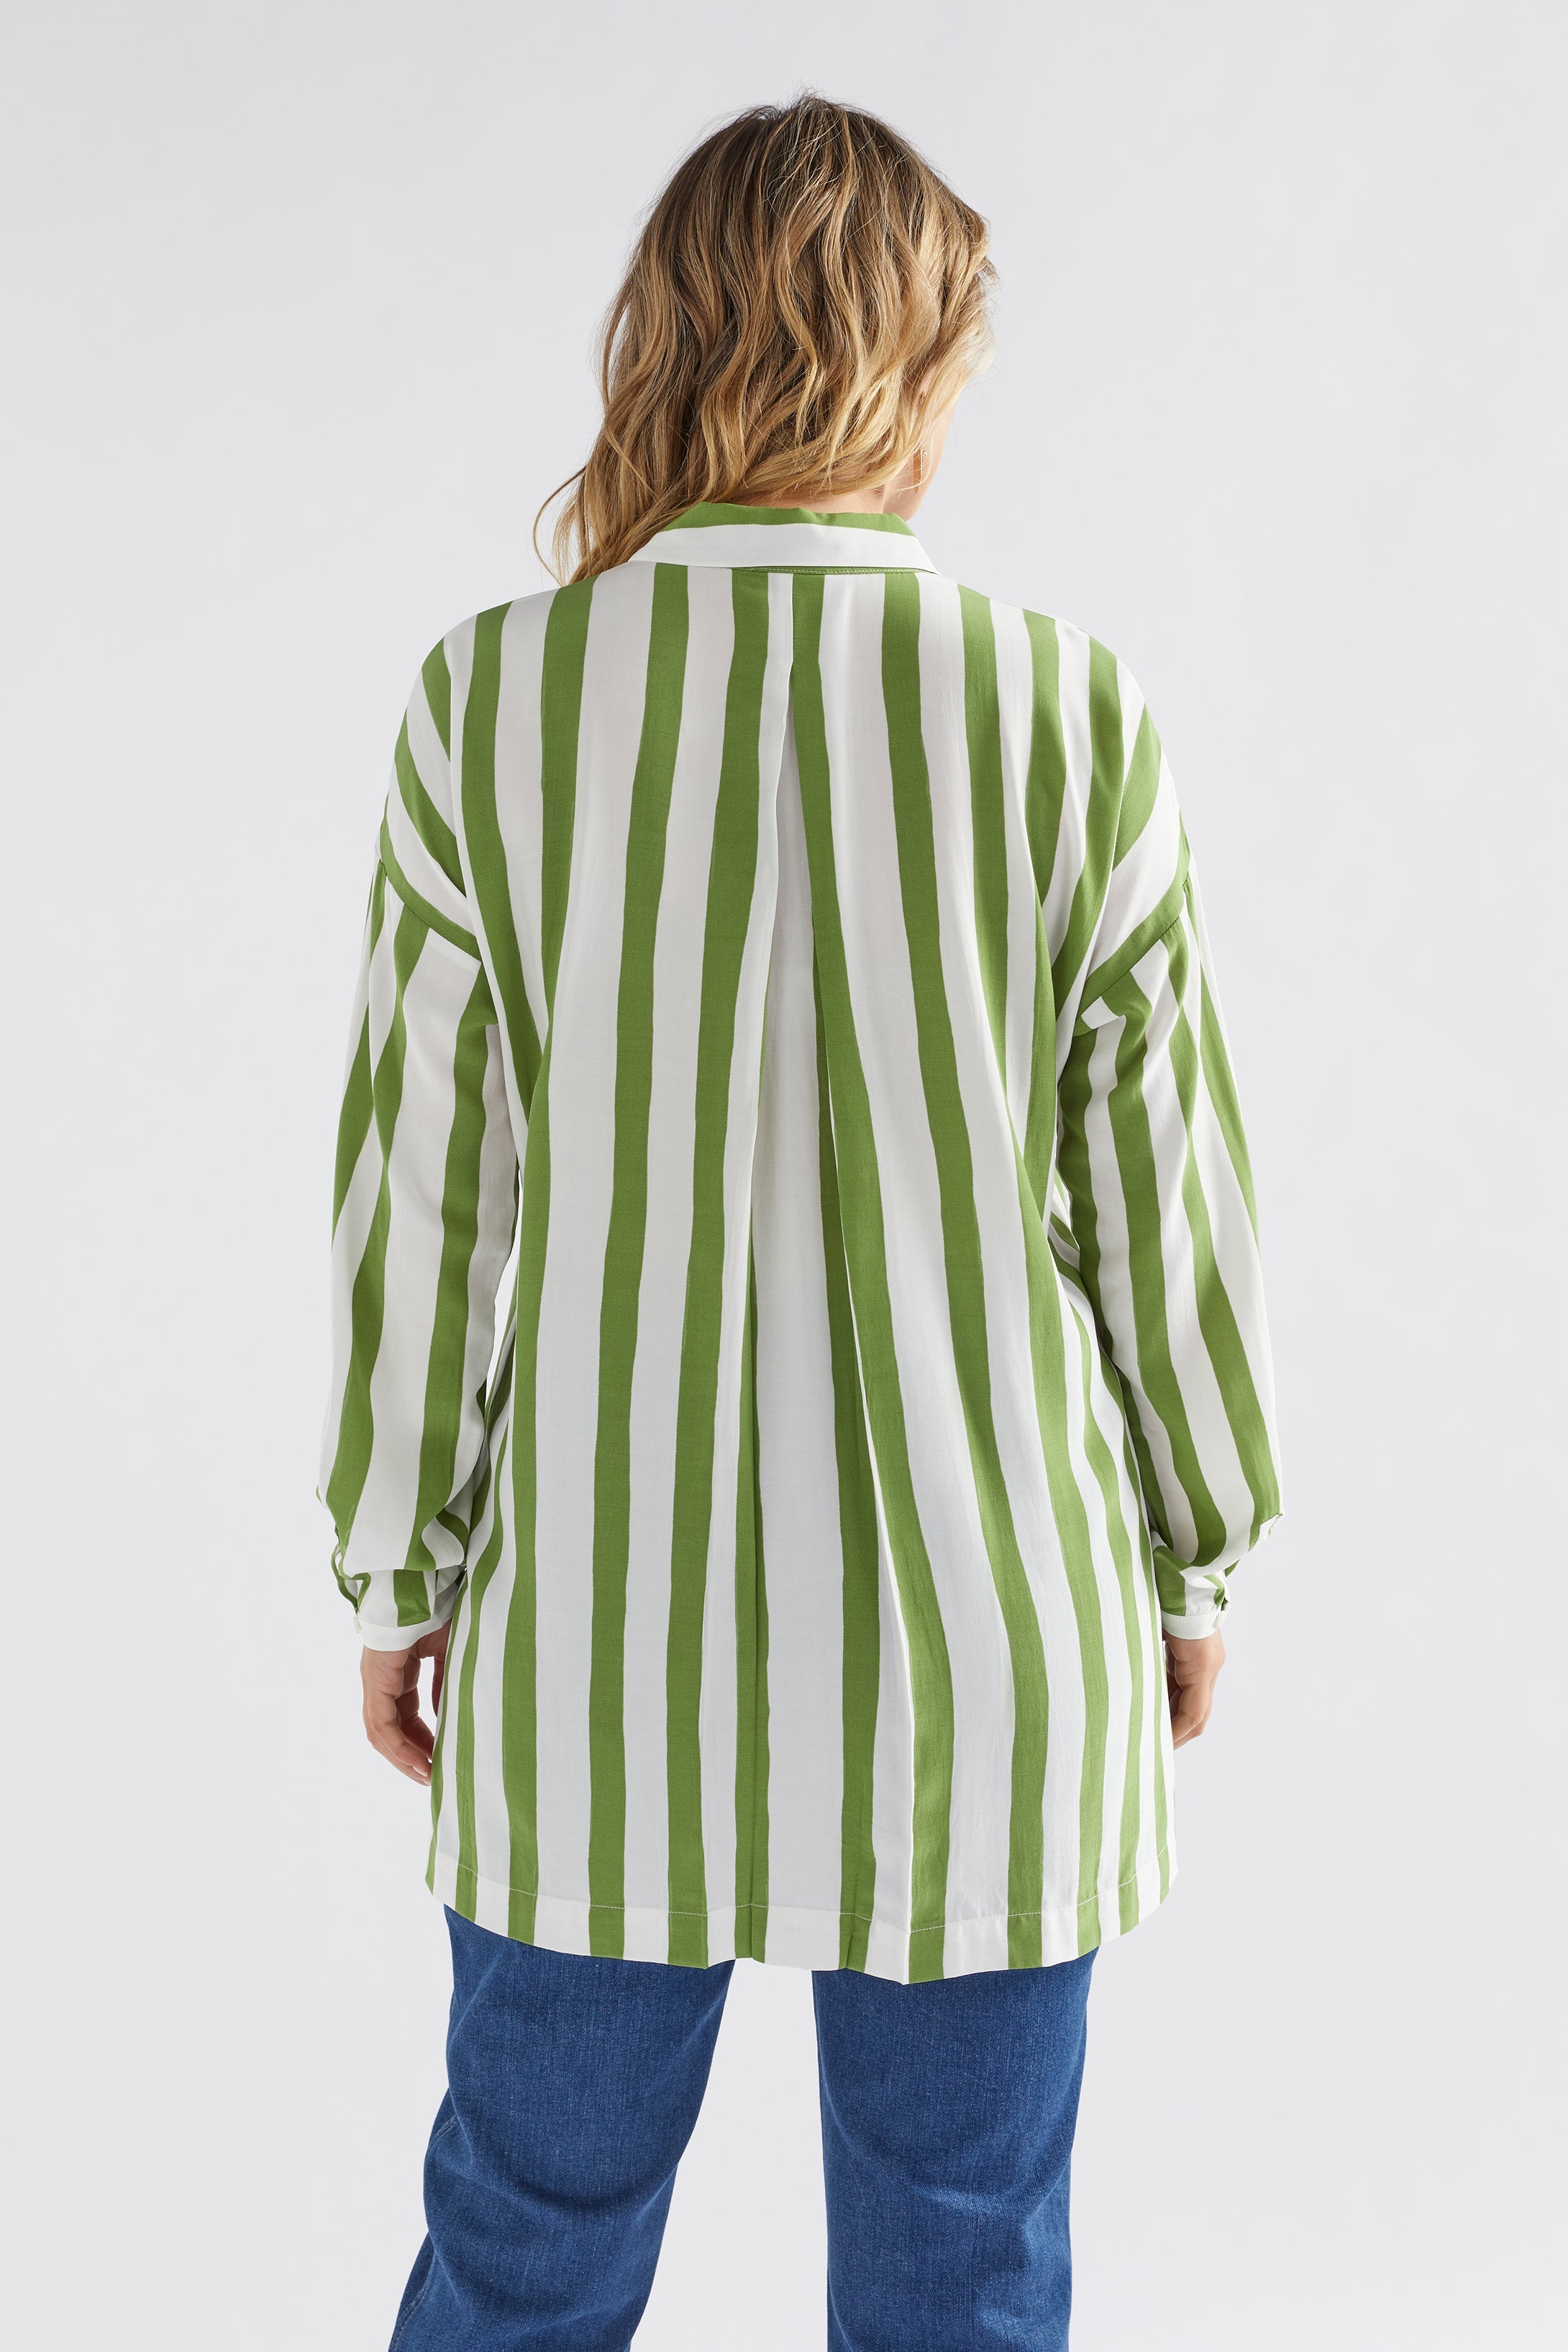 Tilbe Shirt | Green-White Paint Stripe